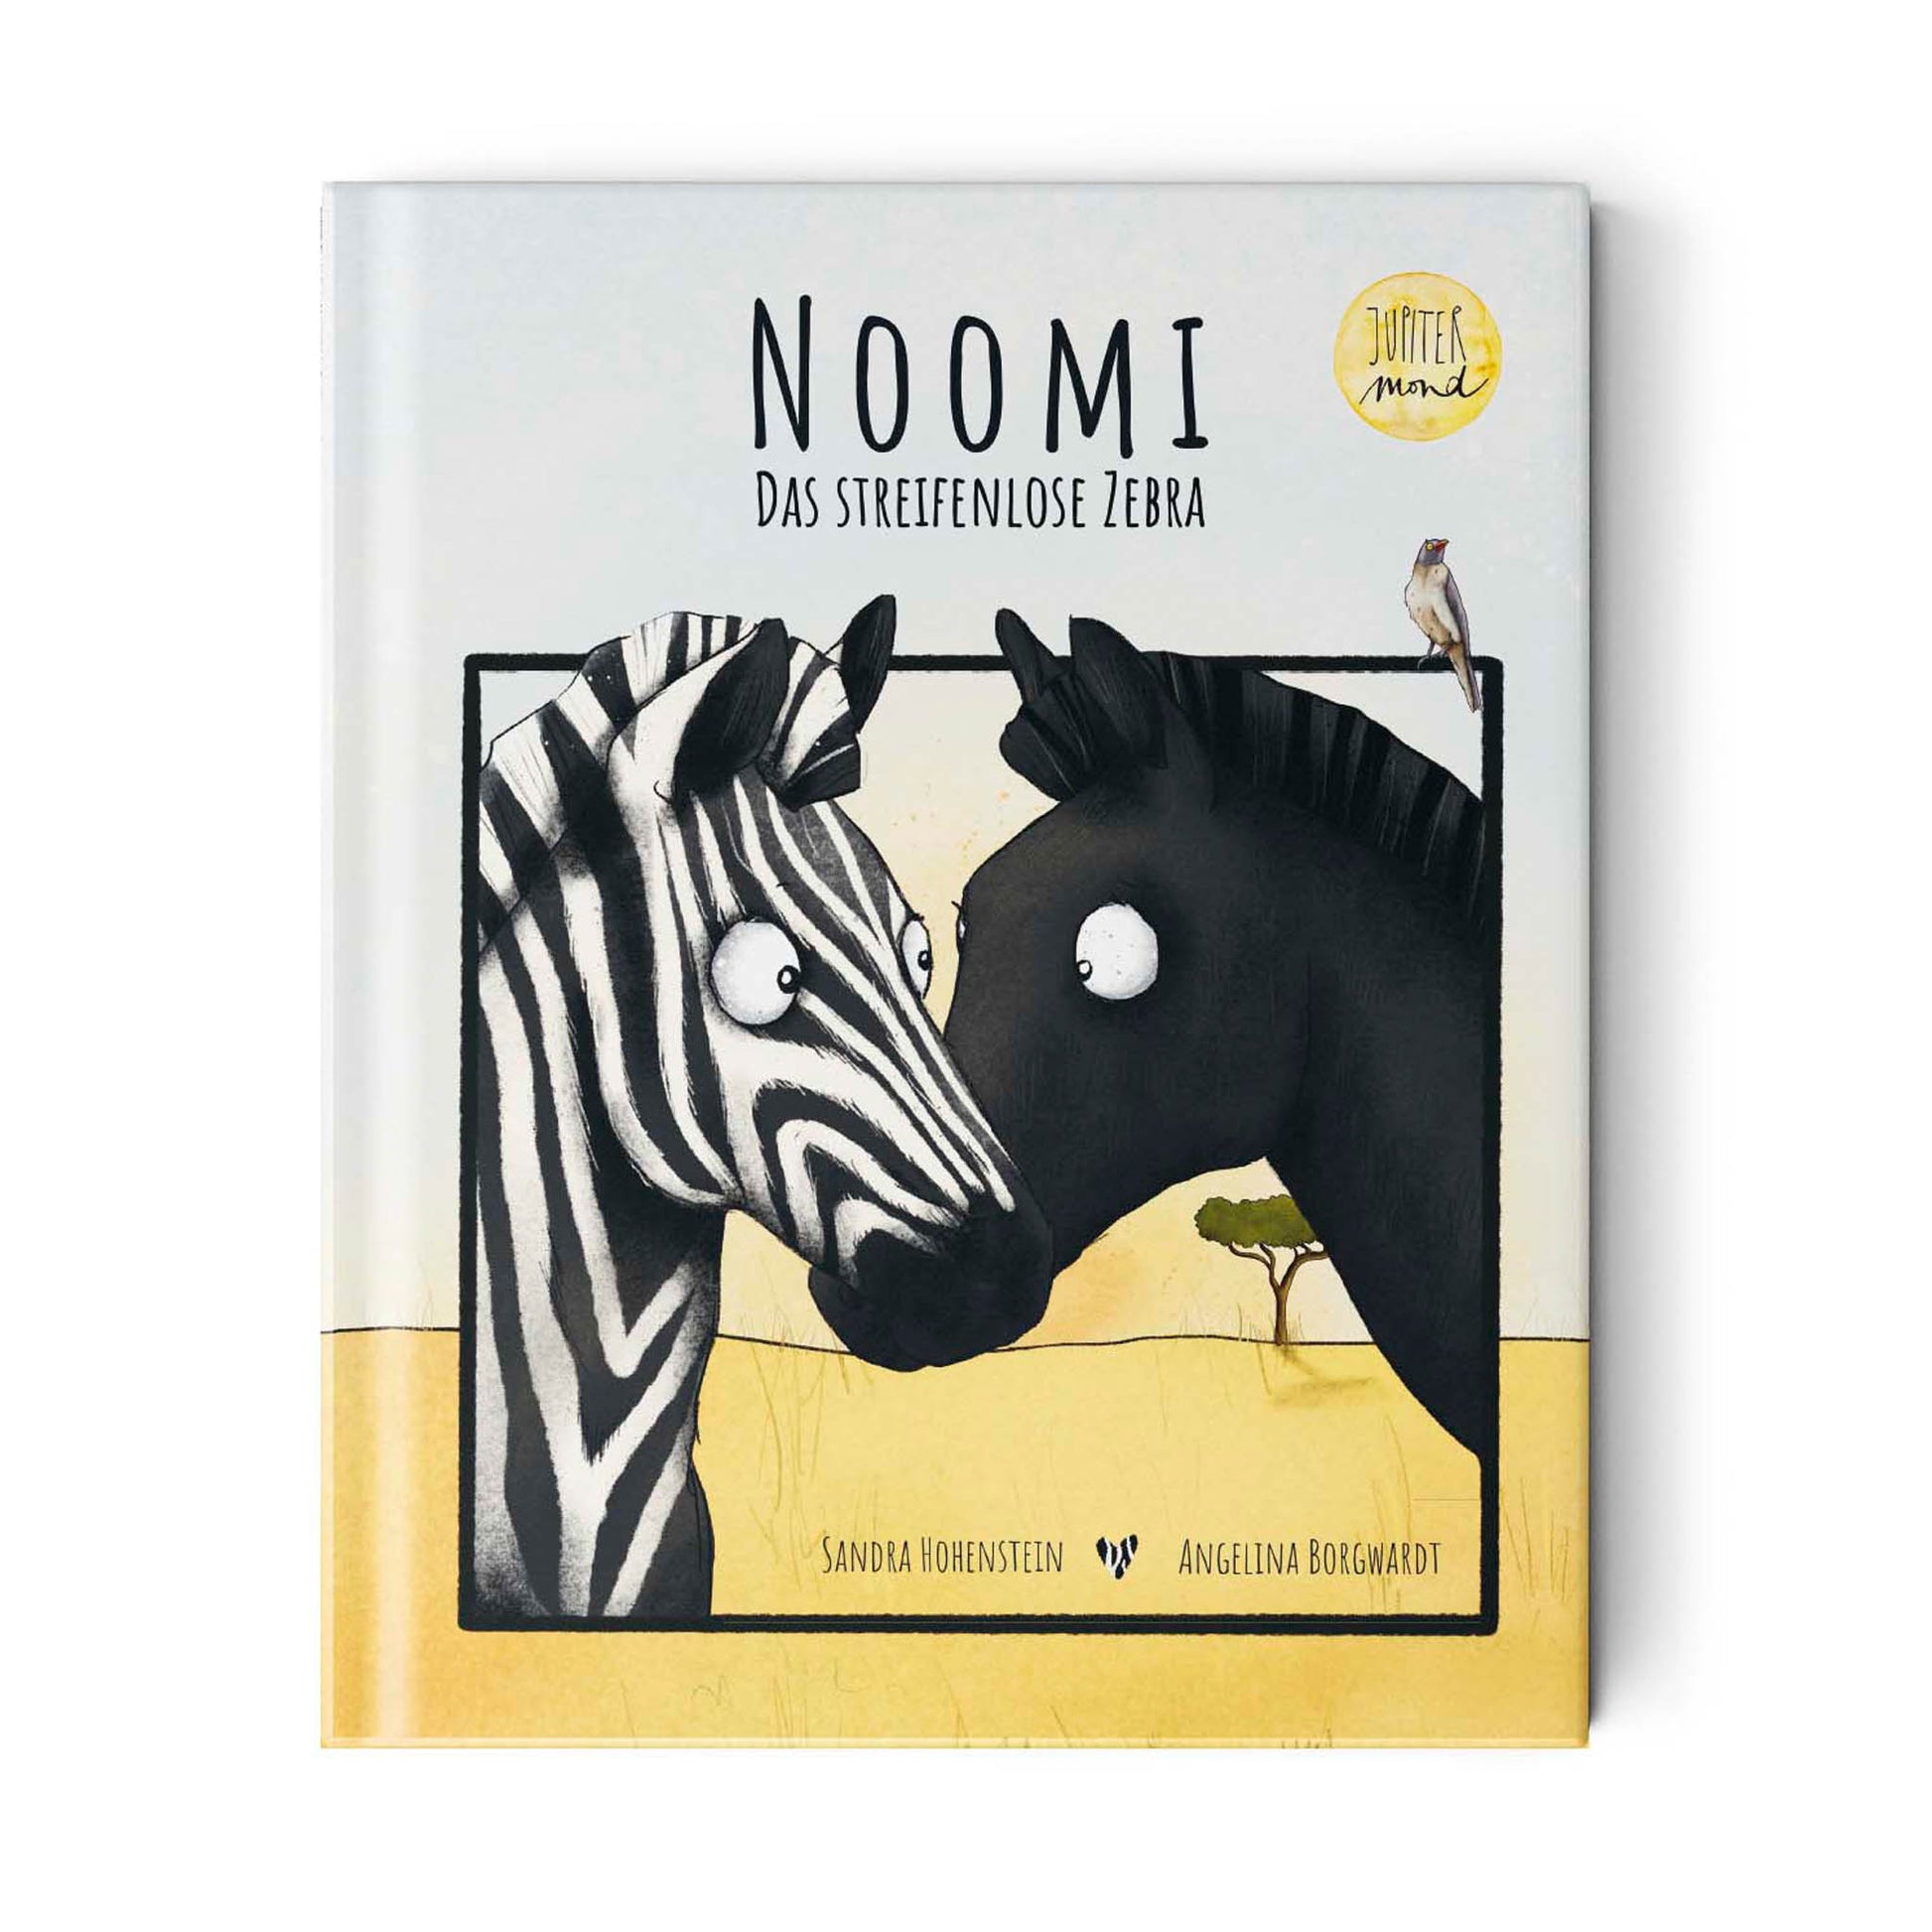 Jetzt vorbestellen! Jupitermond Verlag - Kinderbuch "Noomi, das streifenlose Zebra" - Leja Concept Store